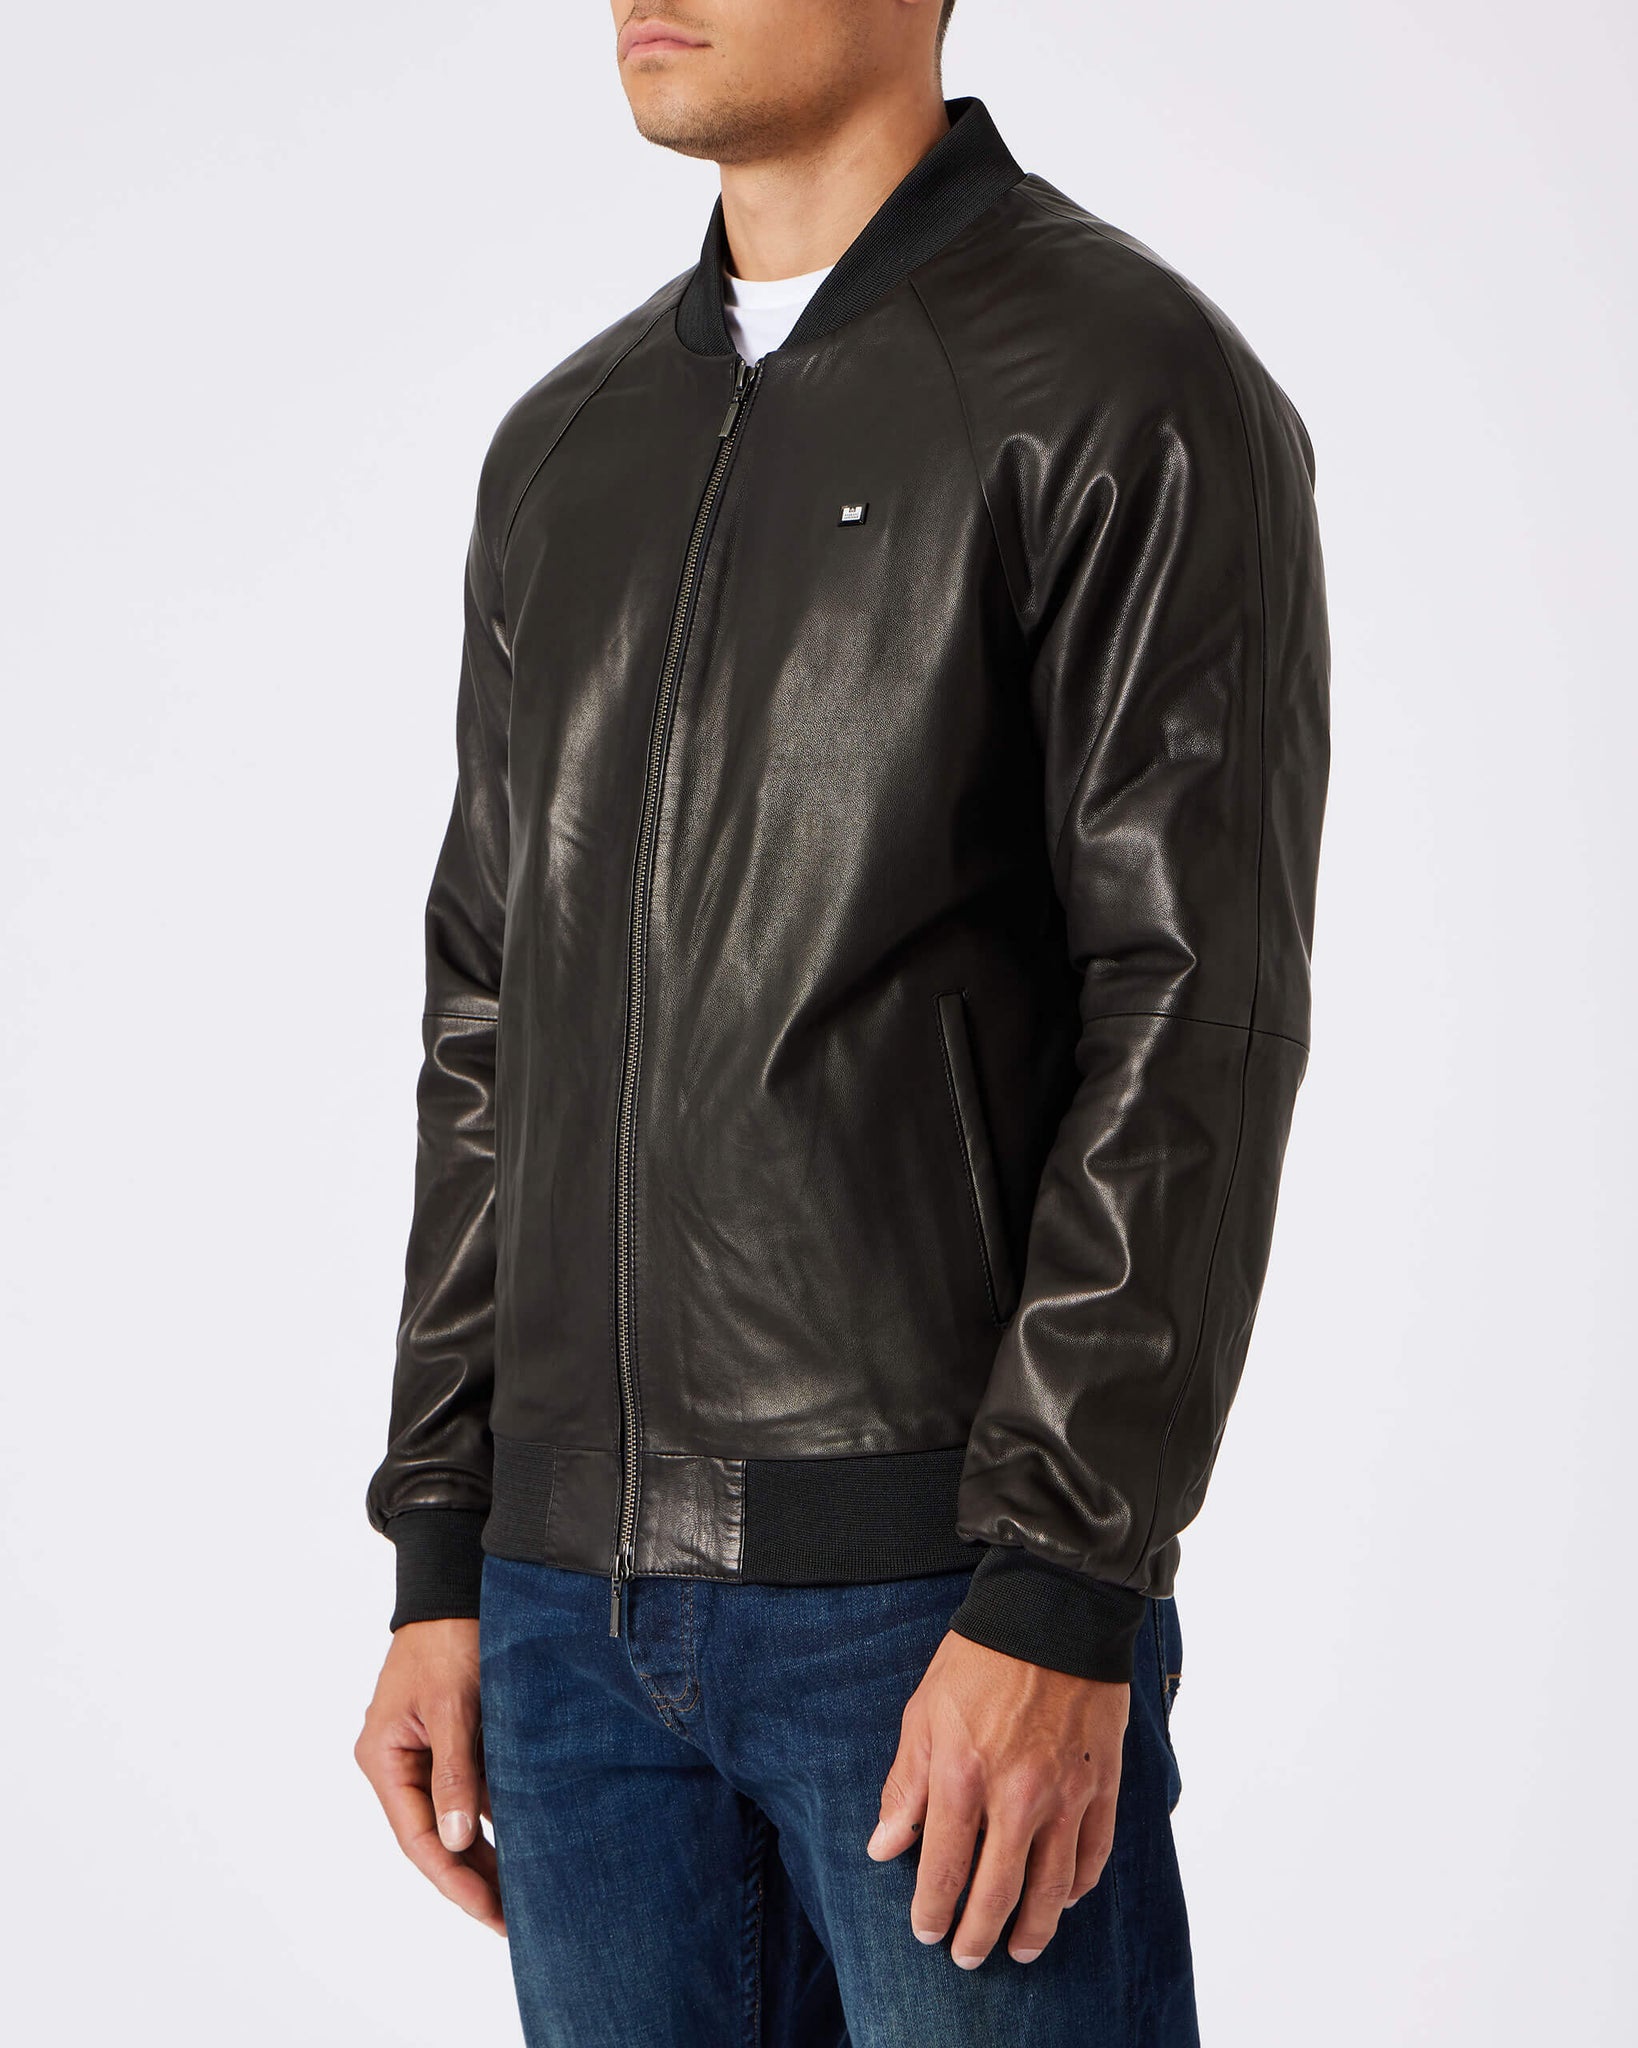 Wythenshawe Leather Jacket Black